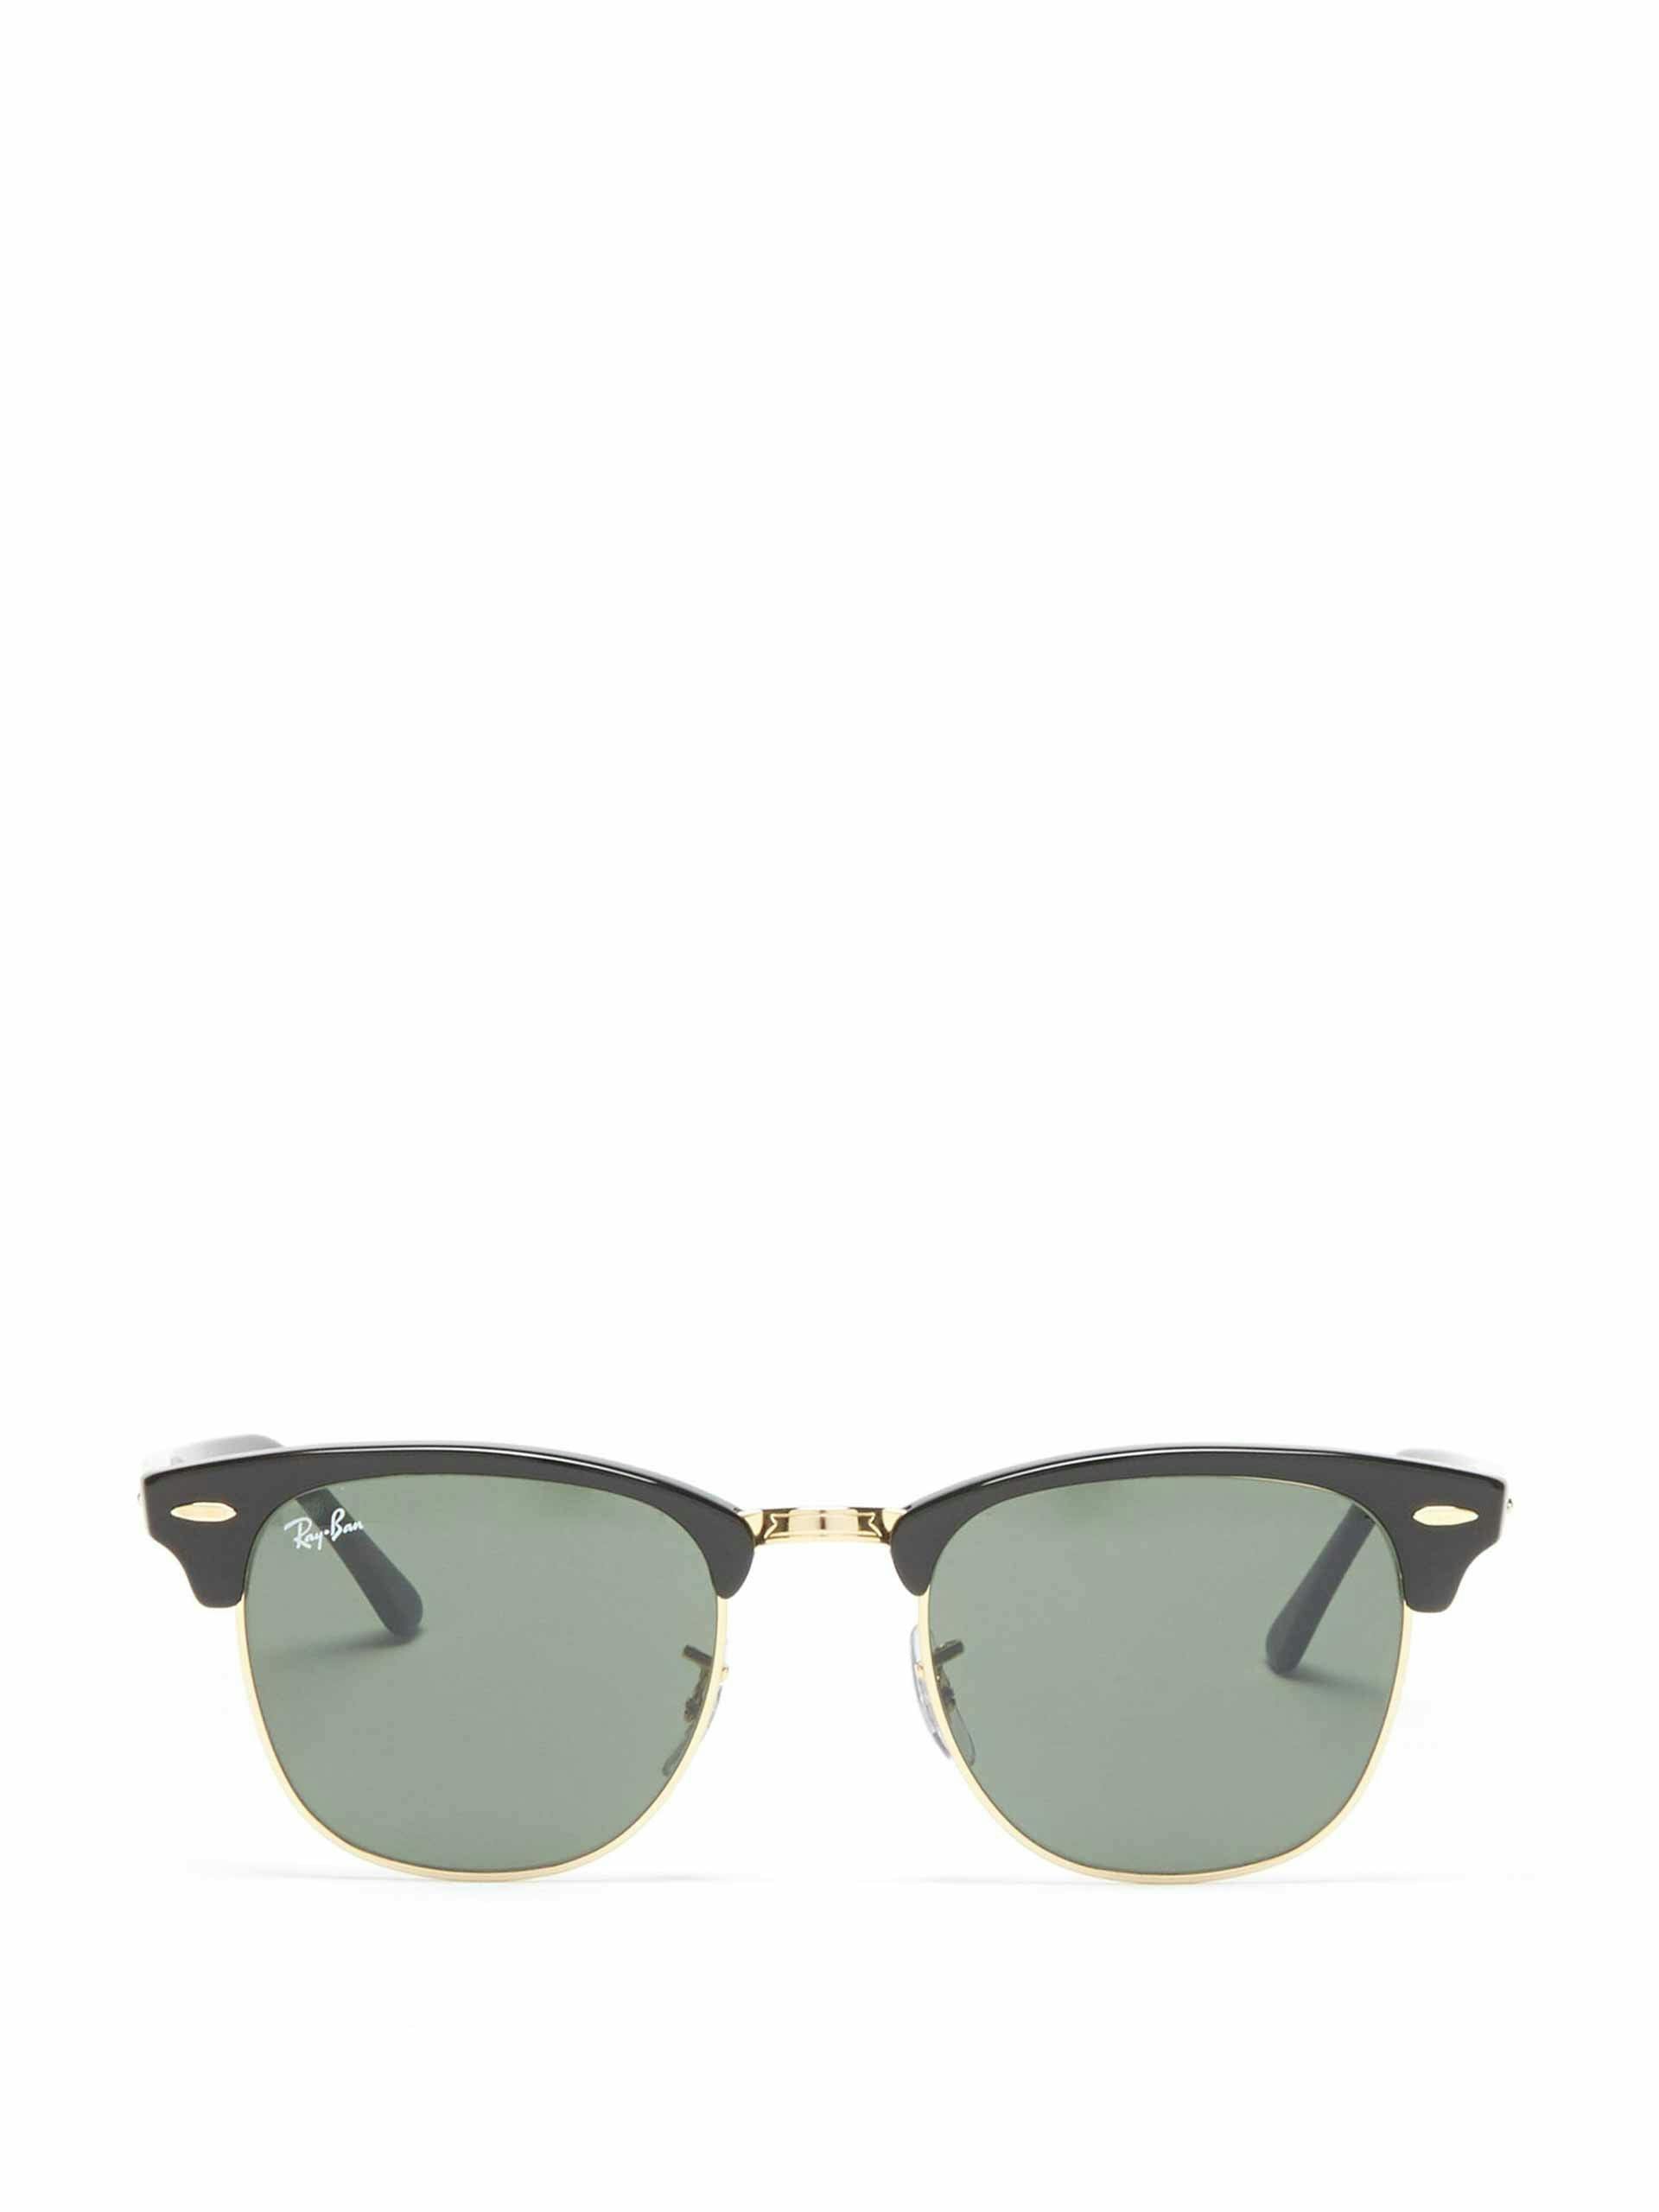 Black square acetate metal sunglasses